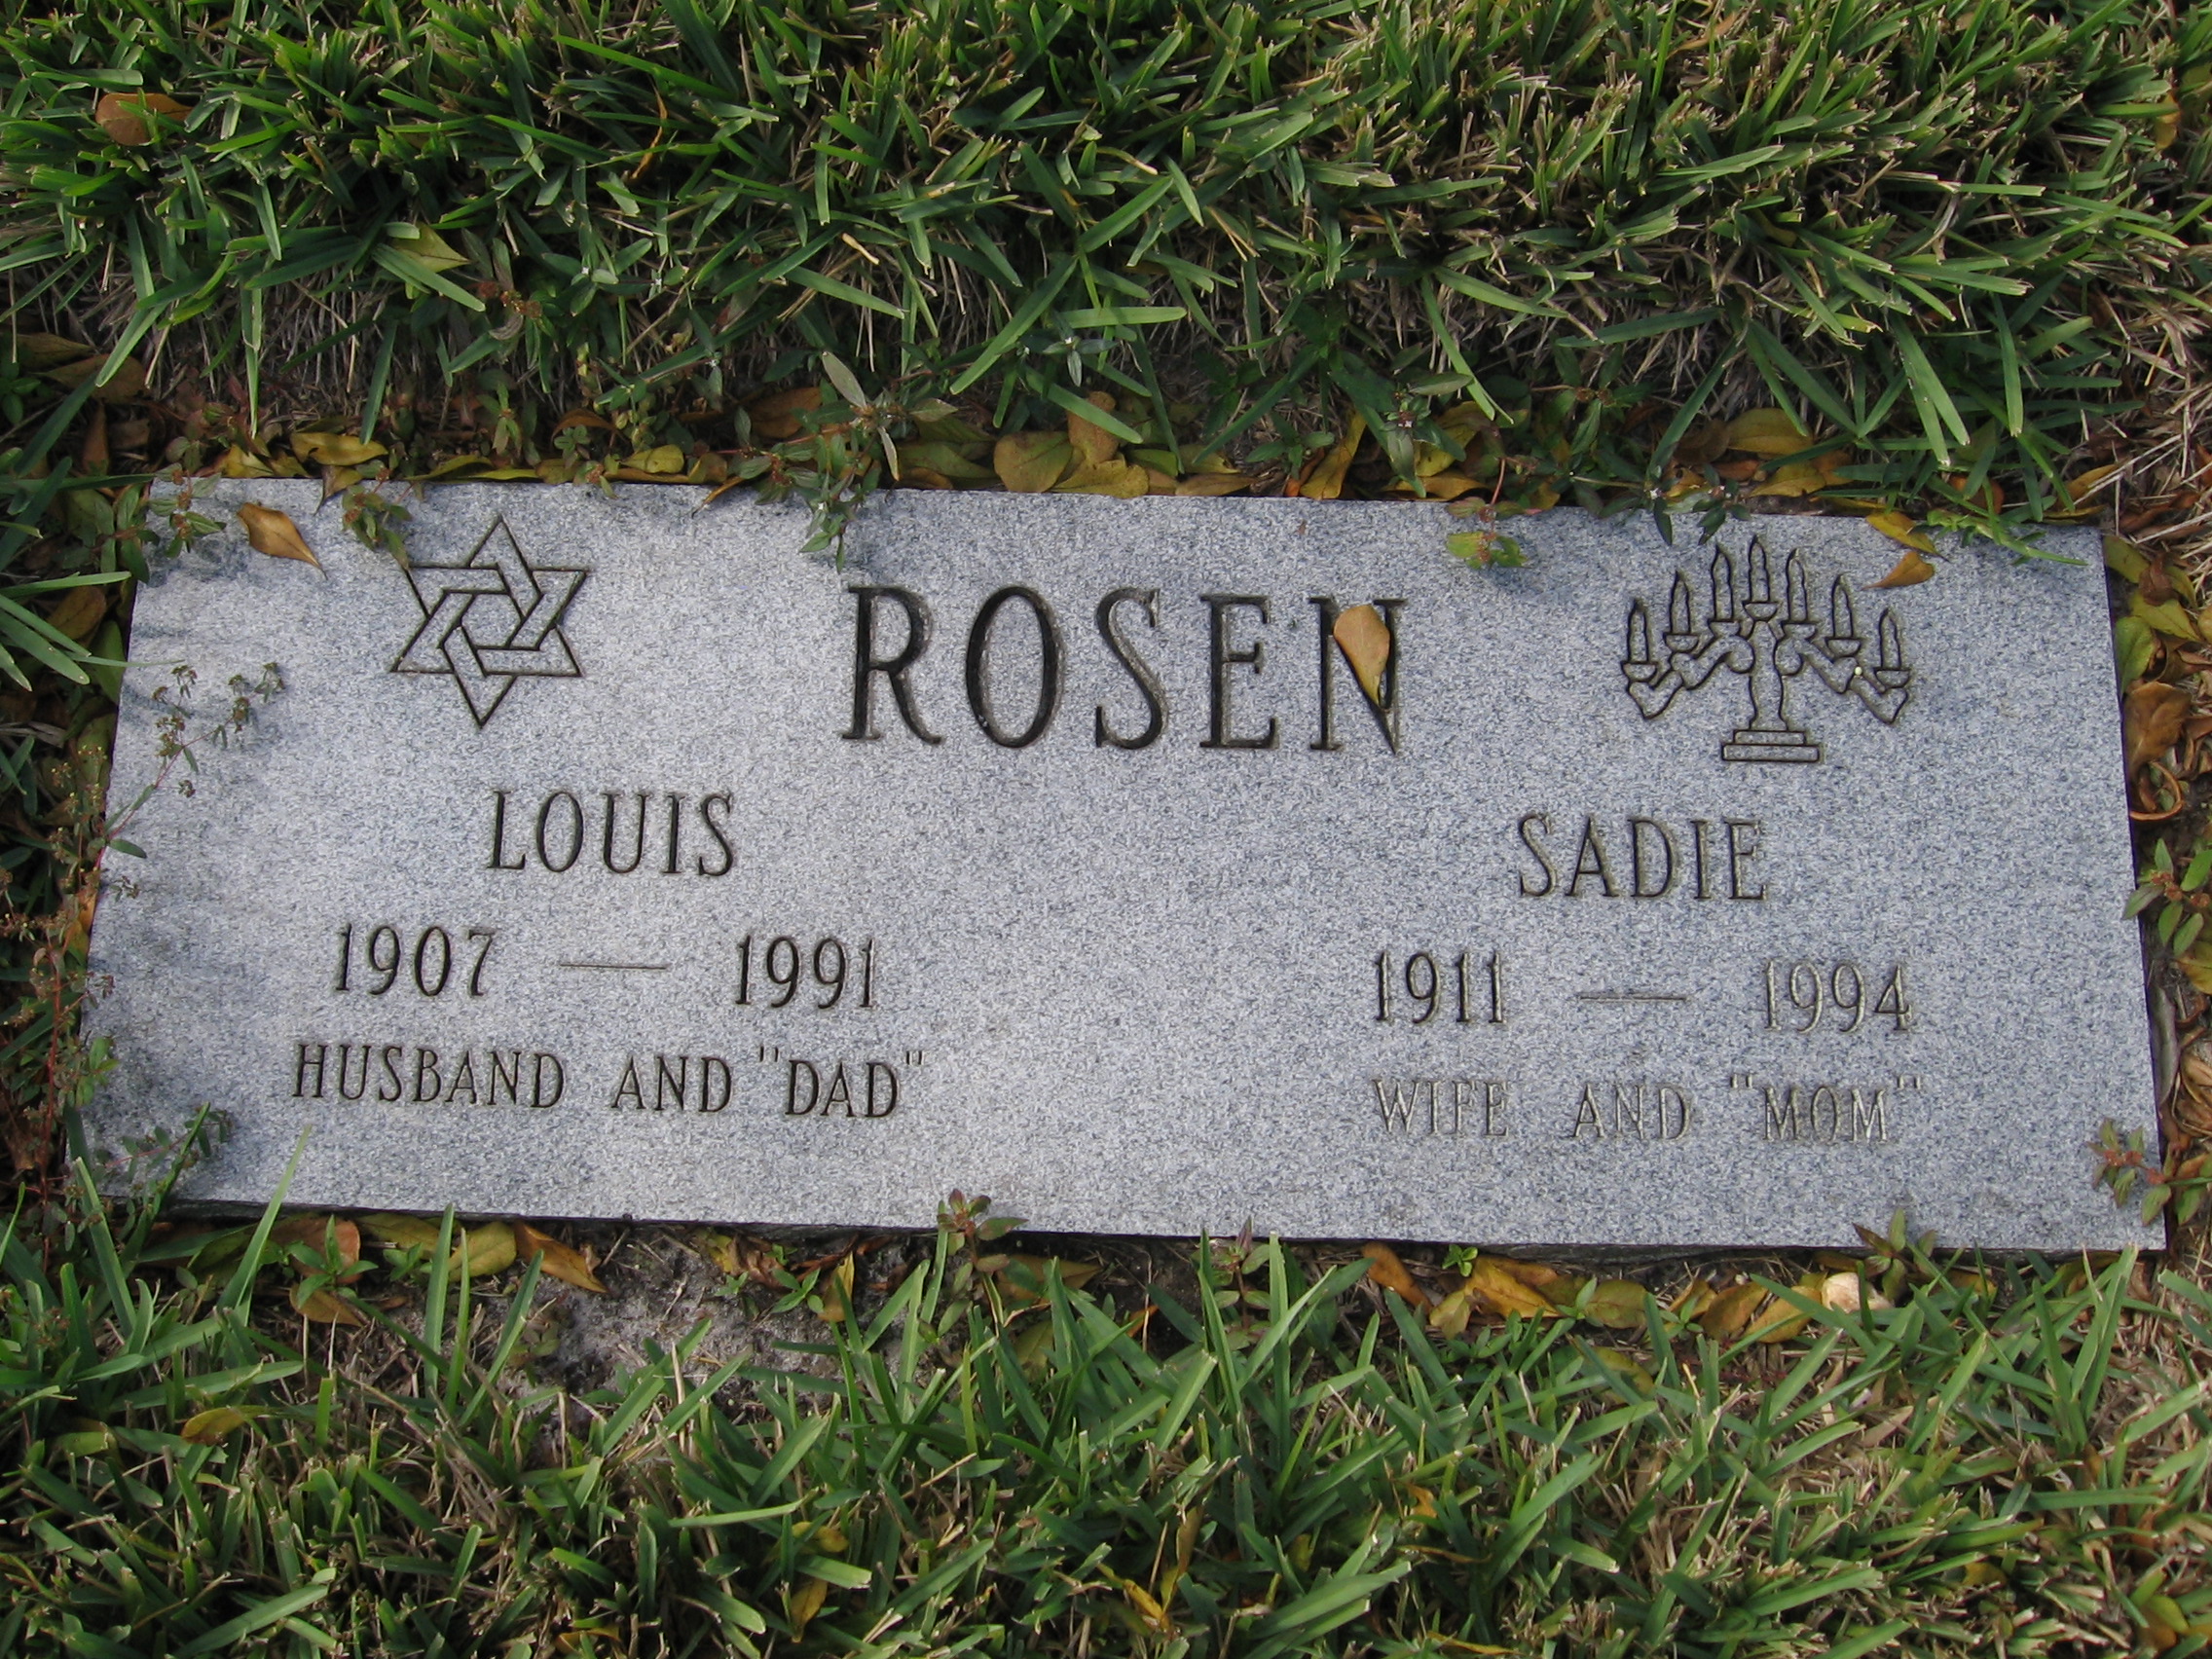 Louis Rosen